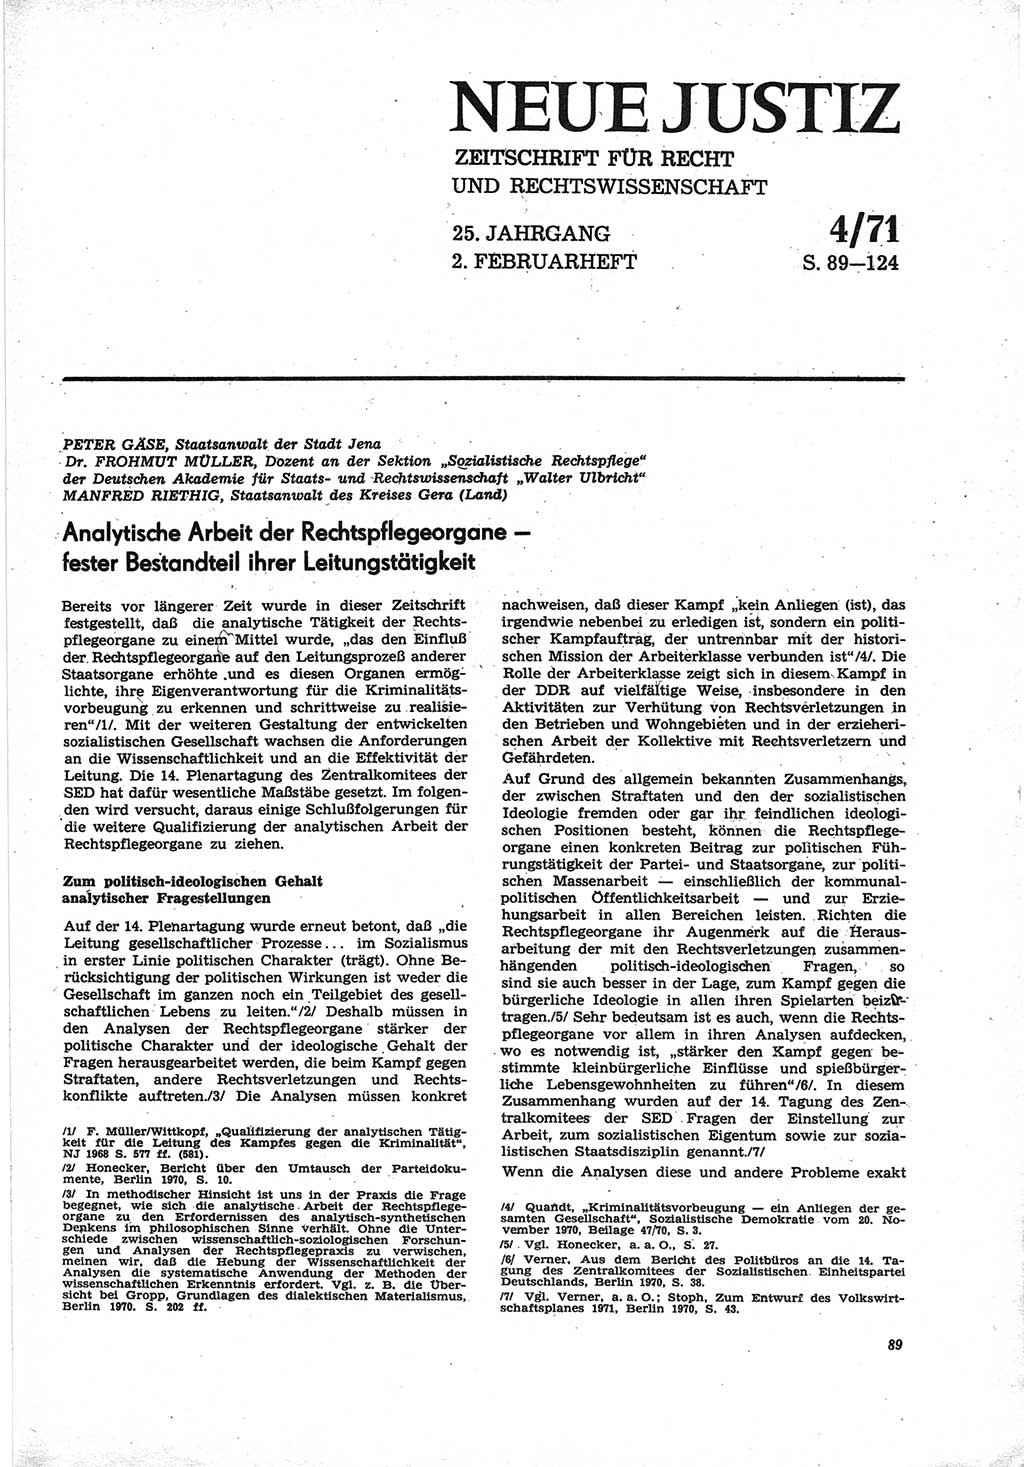 Neue Justiz (NJ), Zeitschrift für Recht und Rechtswissenschaft [Deutsche Demokratische Republik (DDR)], 25. Jahrgang 1971, Seite 89 (NJ DDR 1971, S. 89)